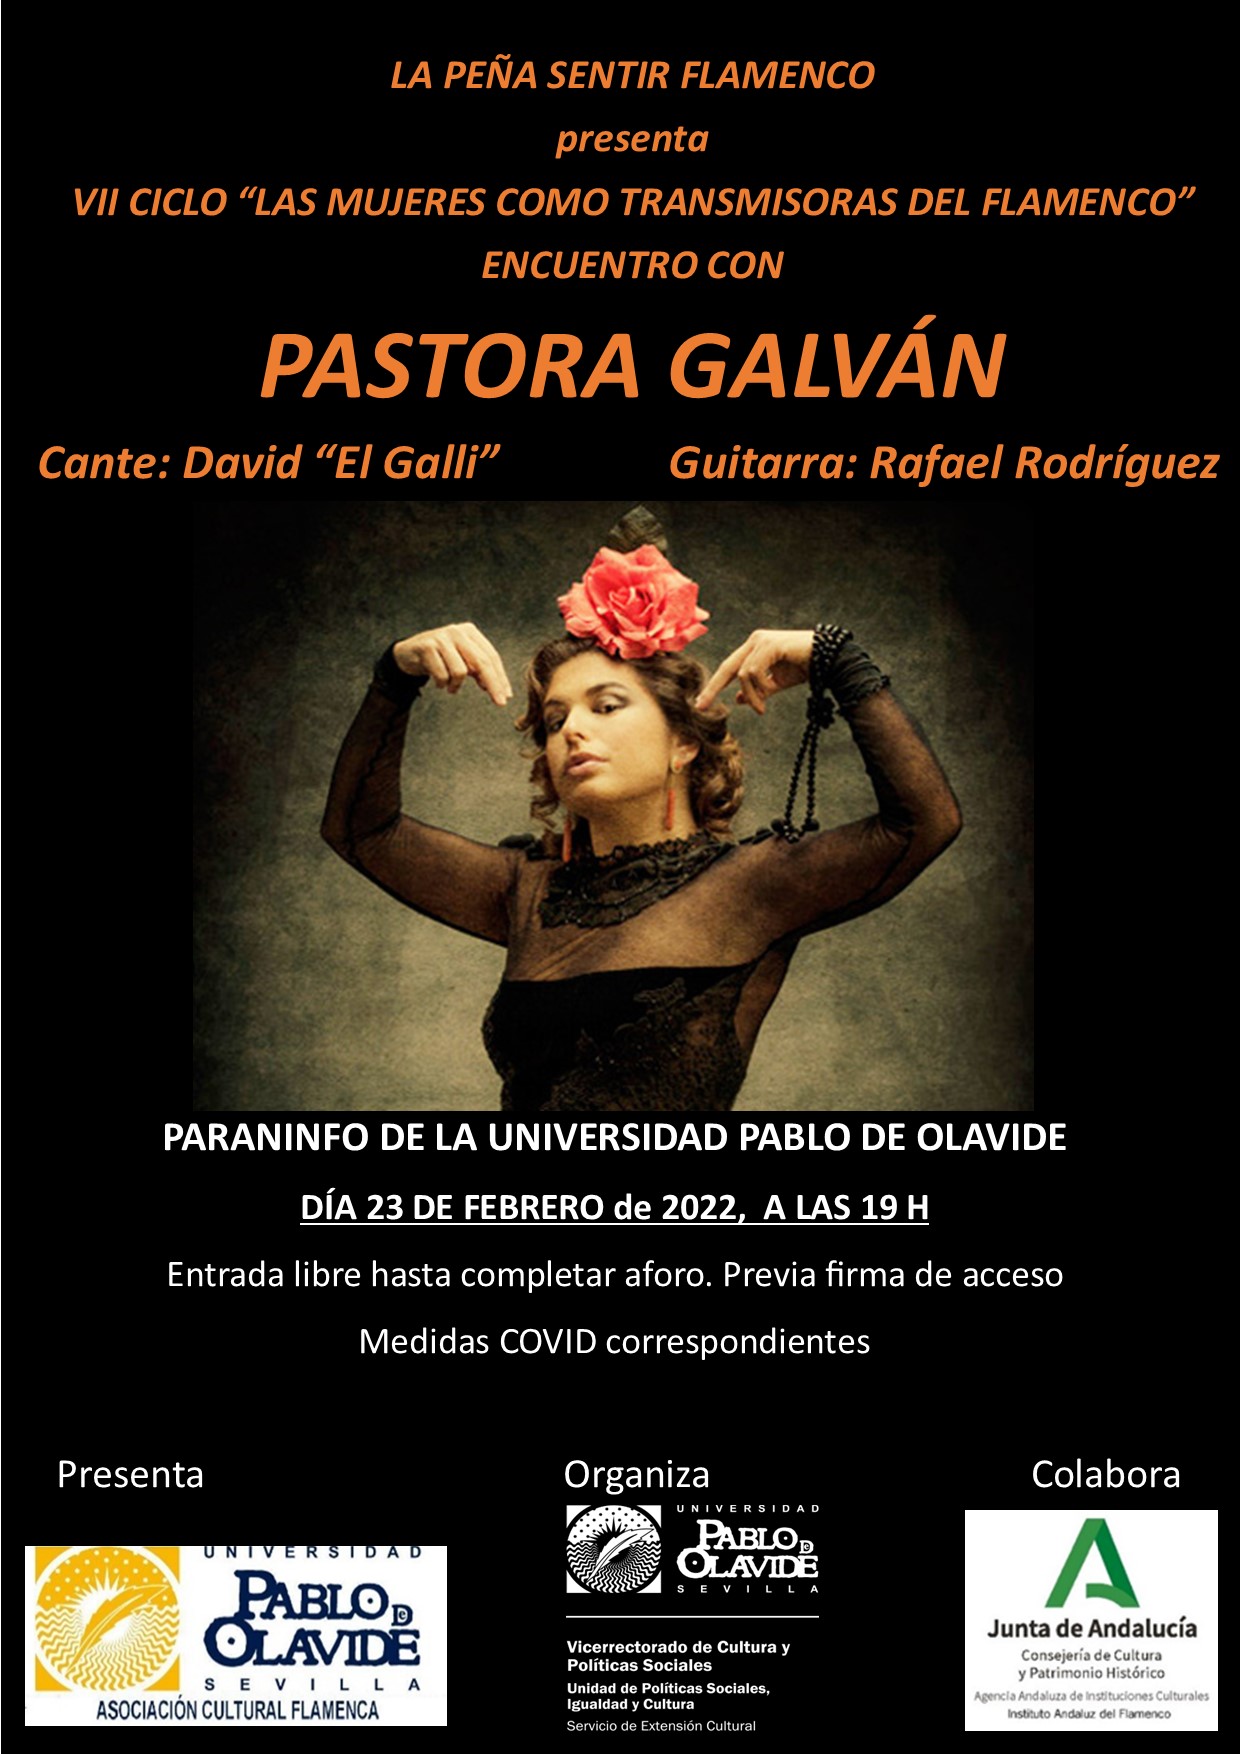 Encuentro con Pastora Galván